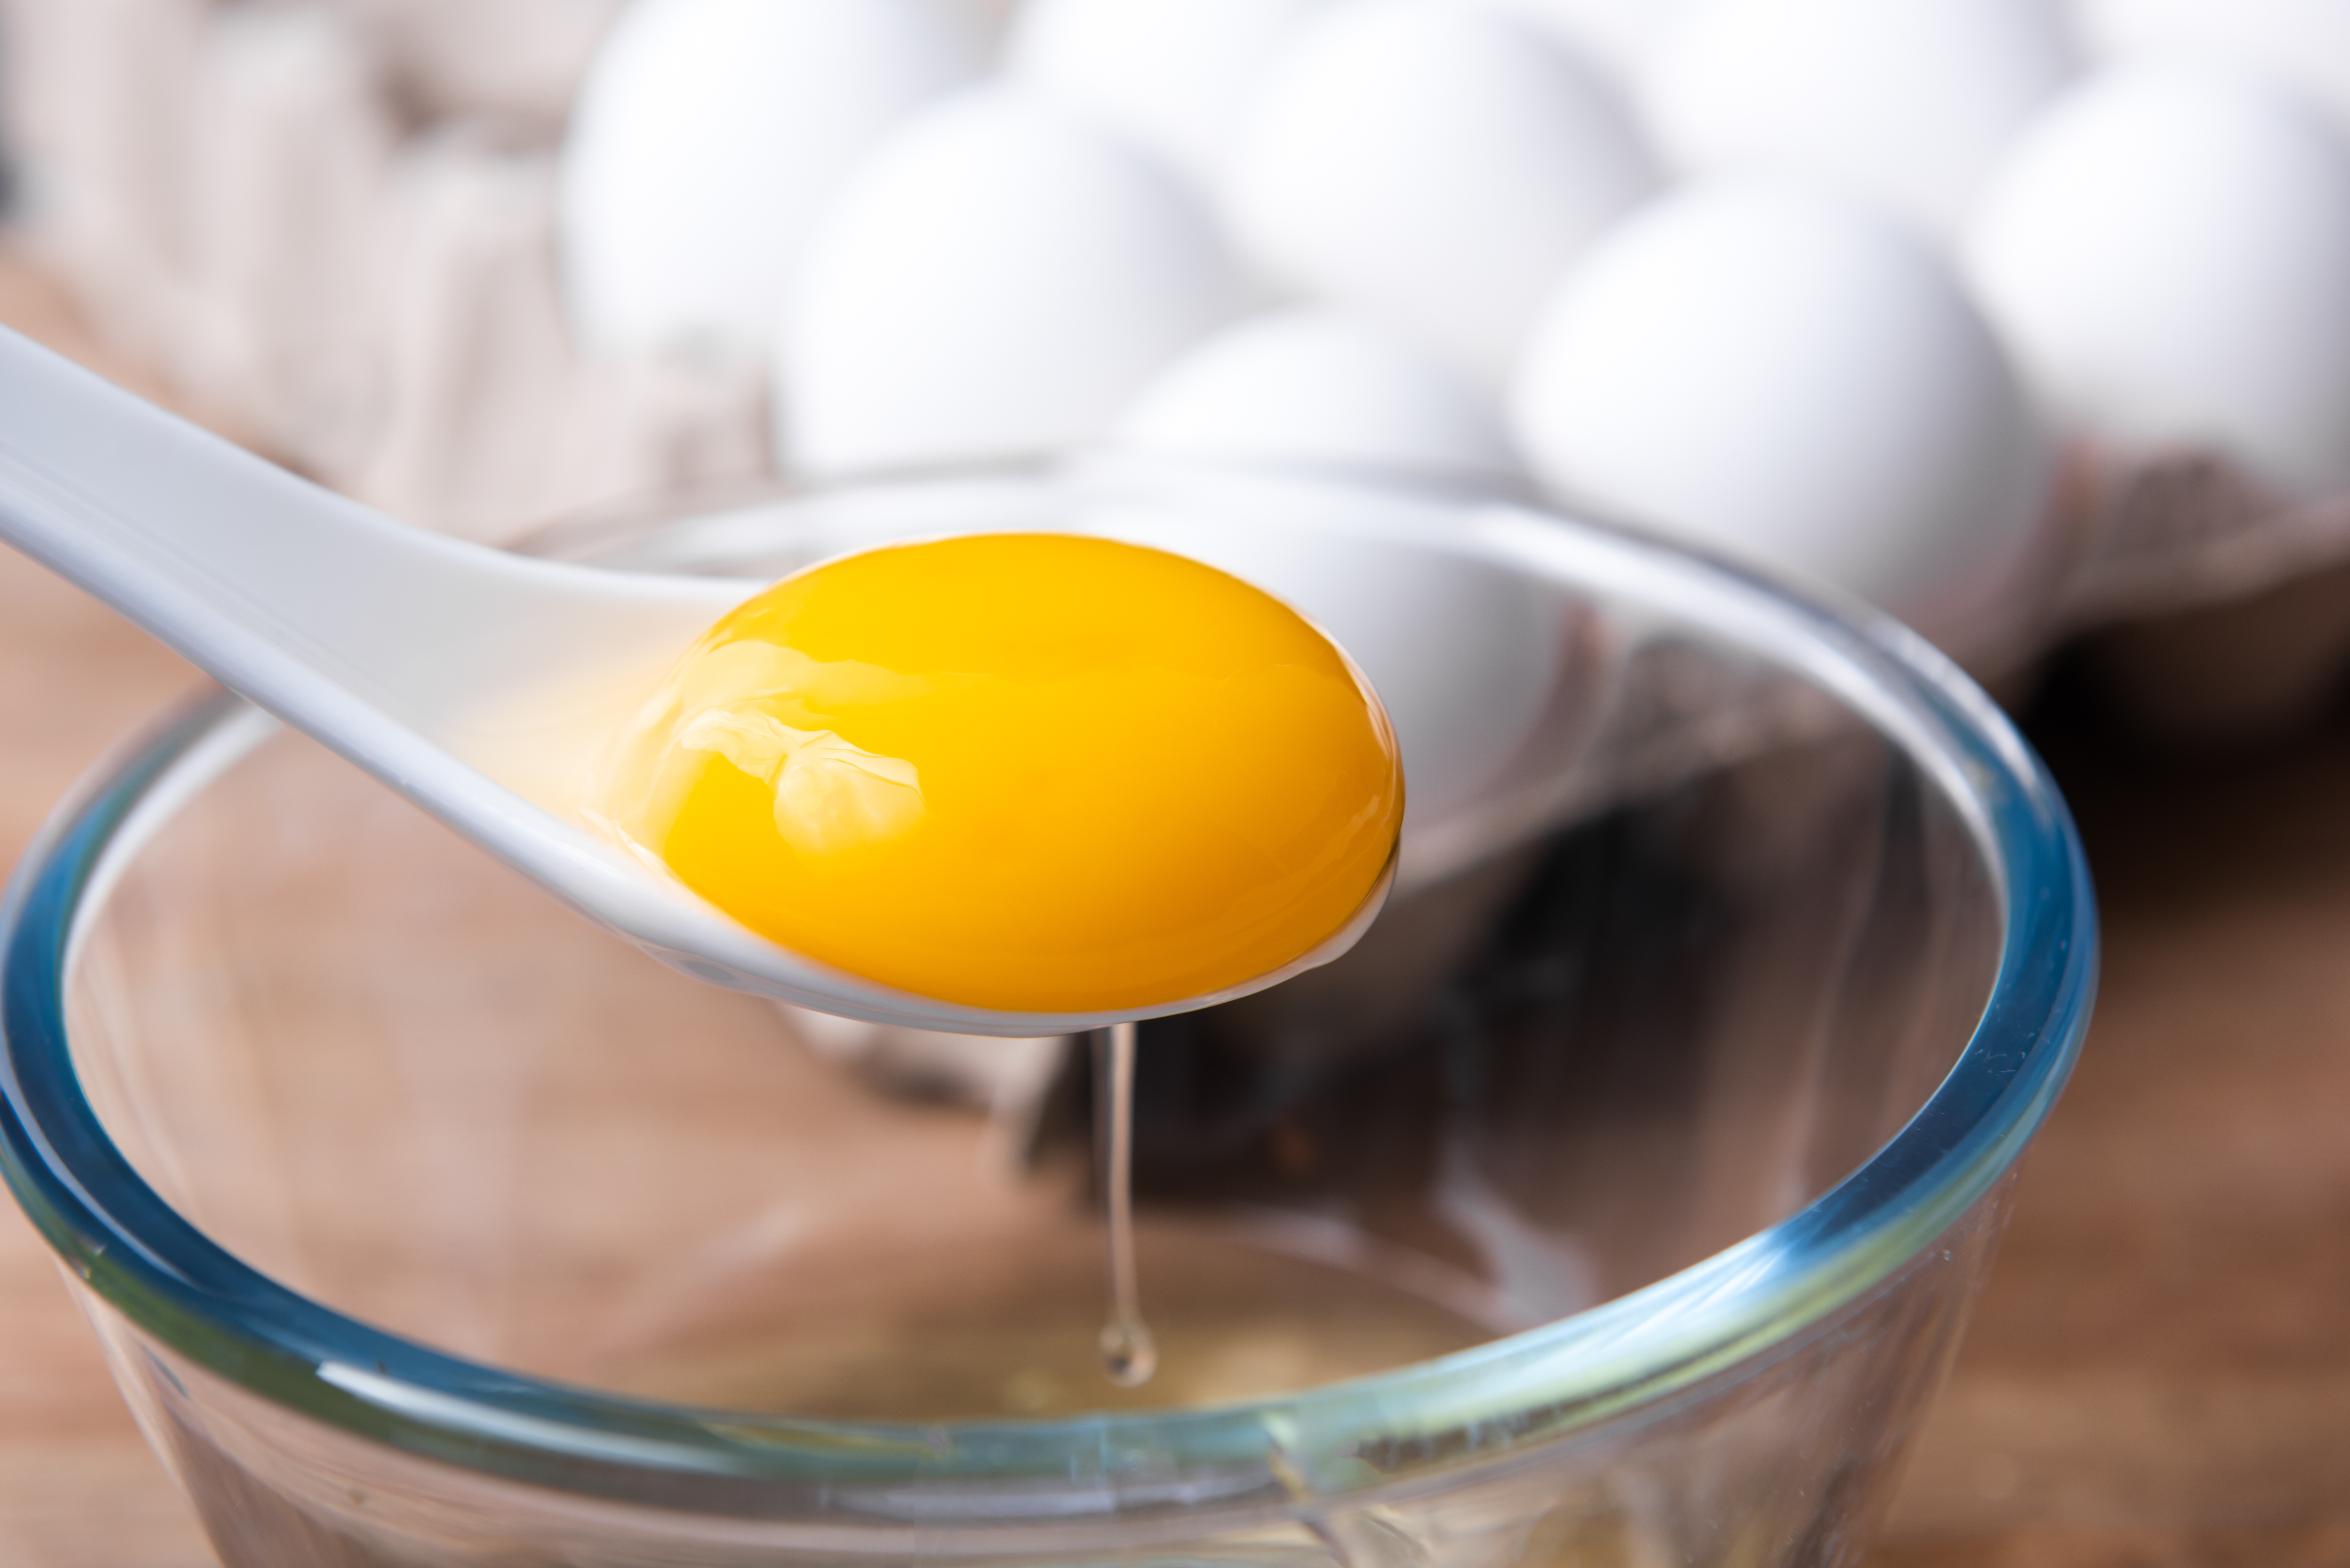 El Dr. Pasiah dijo que la yema de huevo se puede aplicar en las cejas durante hasta 20 minutos para estimular el crecimiento (imagen de archivo)